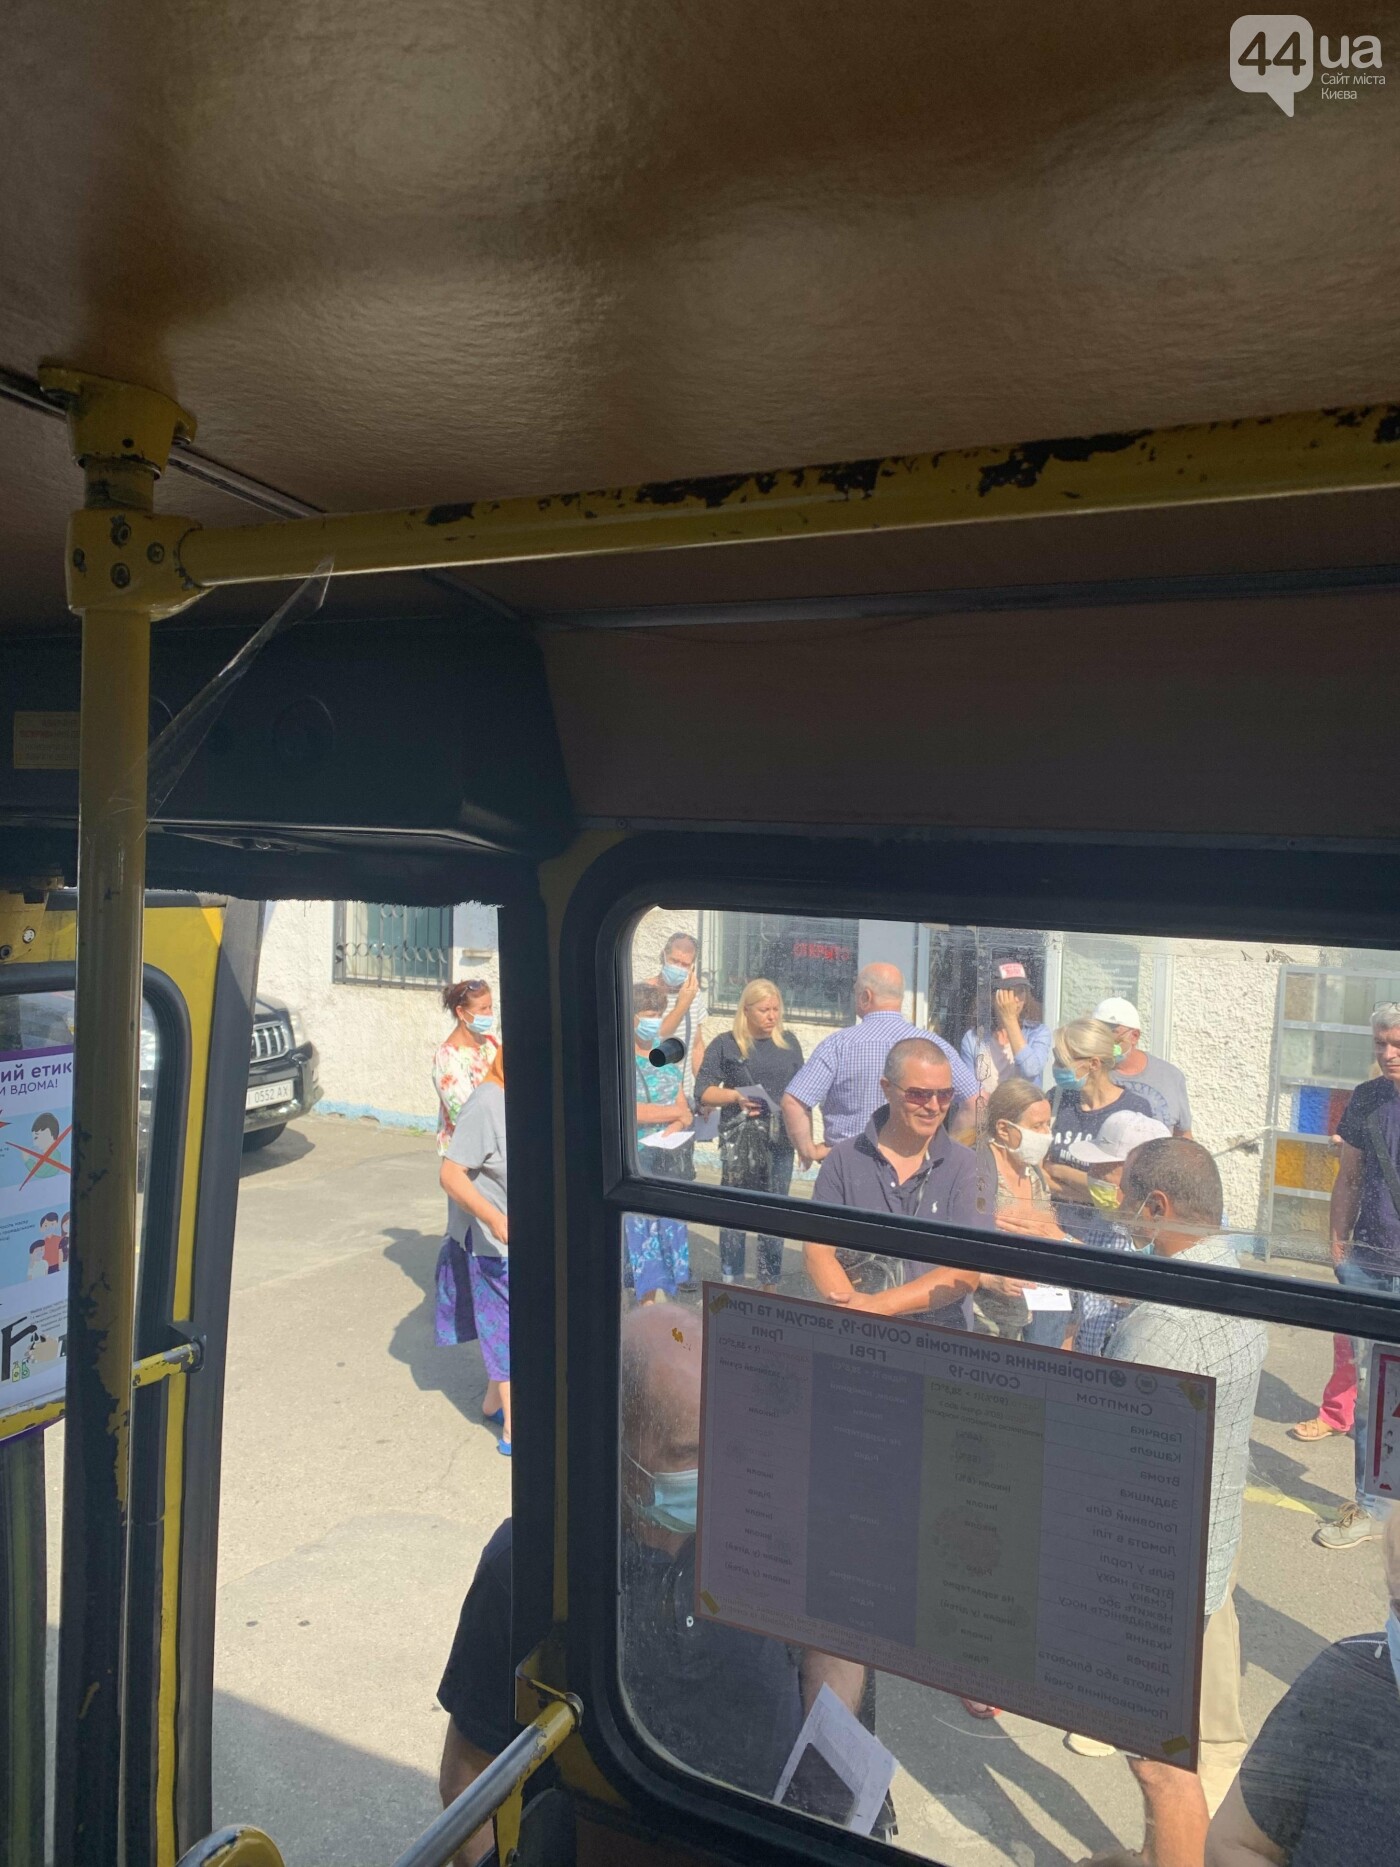 Прививка в автобусе: в Киеве на “Героев Днепра” люди несколько часов стоят в очереди за вакциной, - ФОТО, ВИДЕО